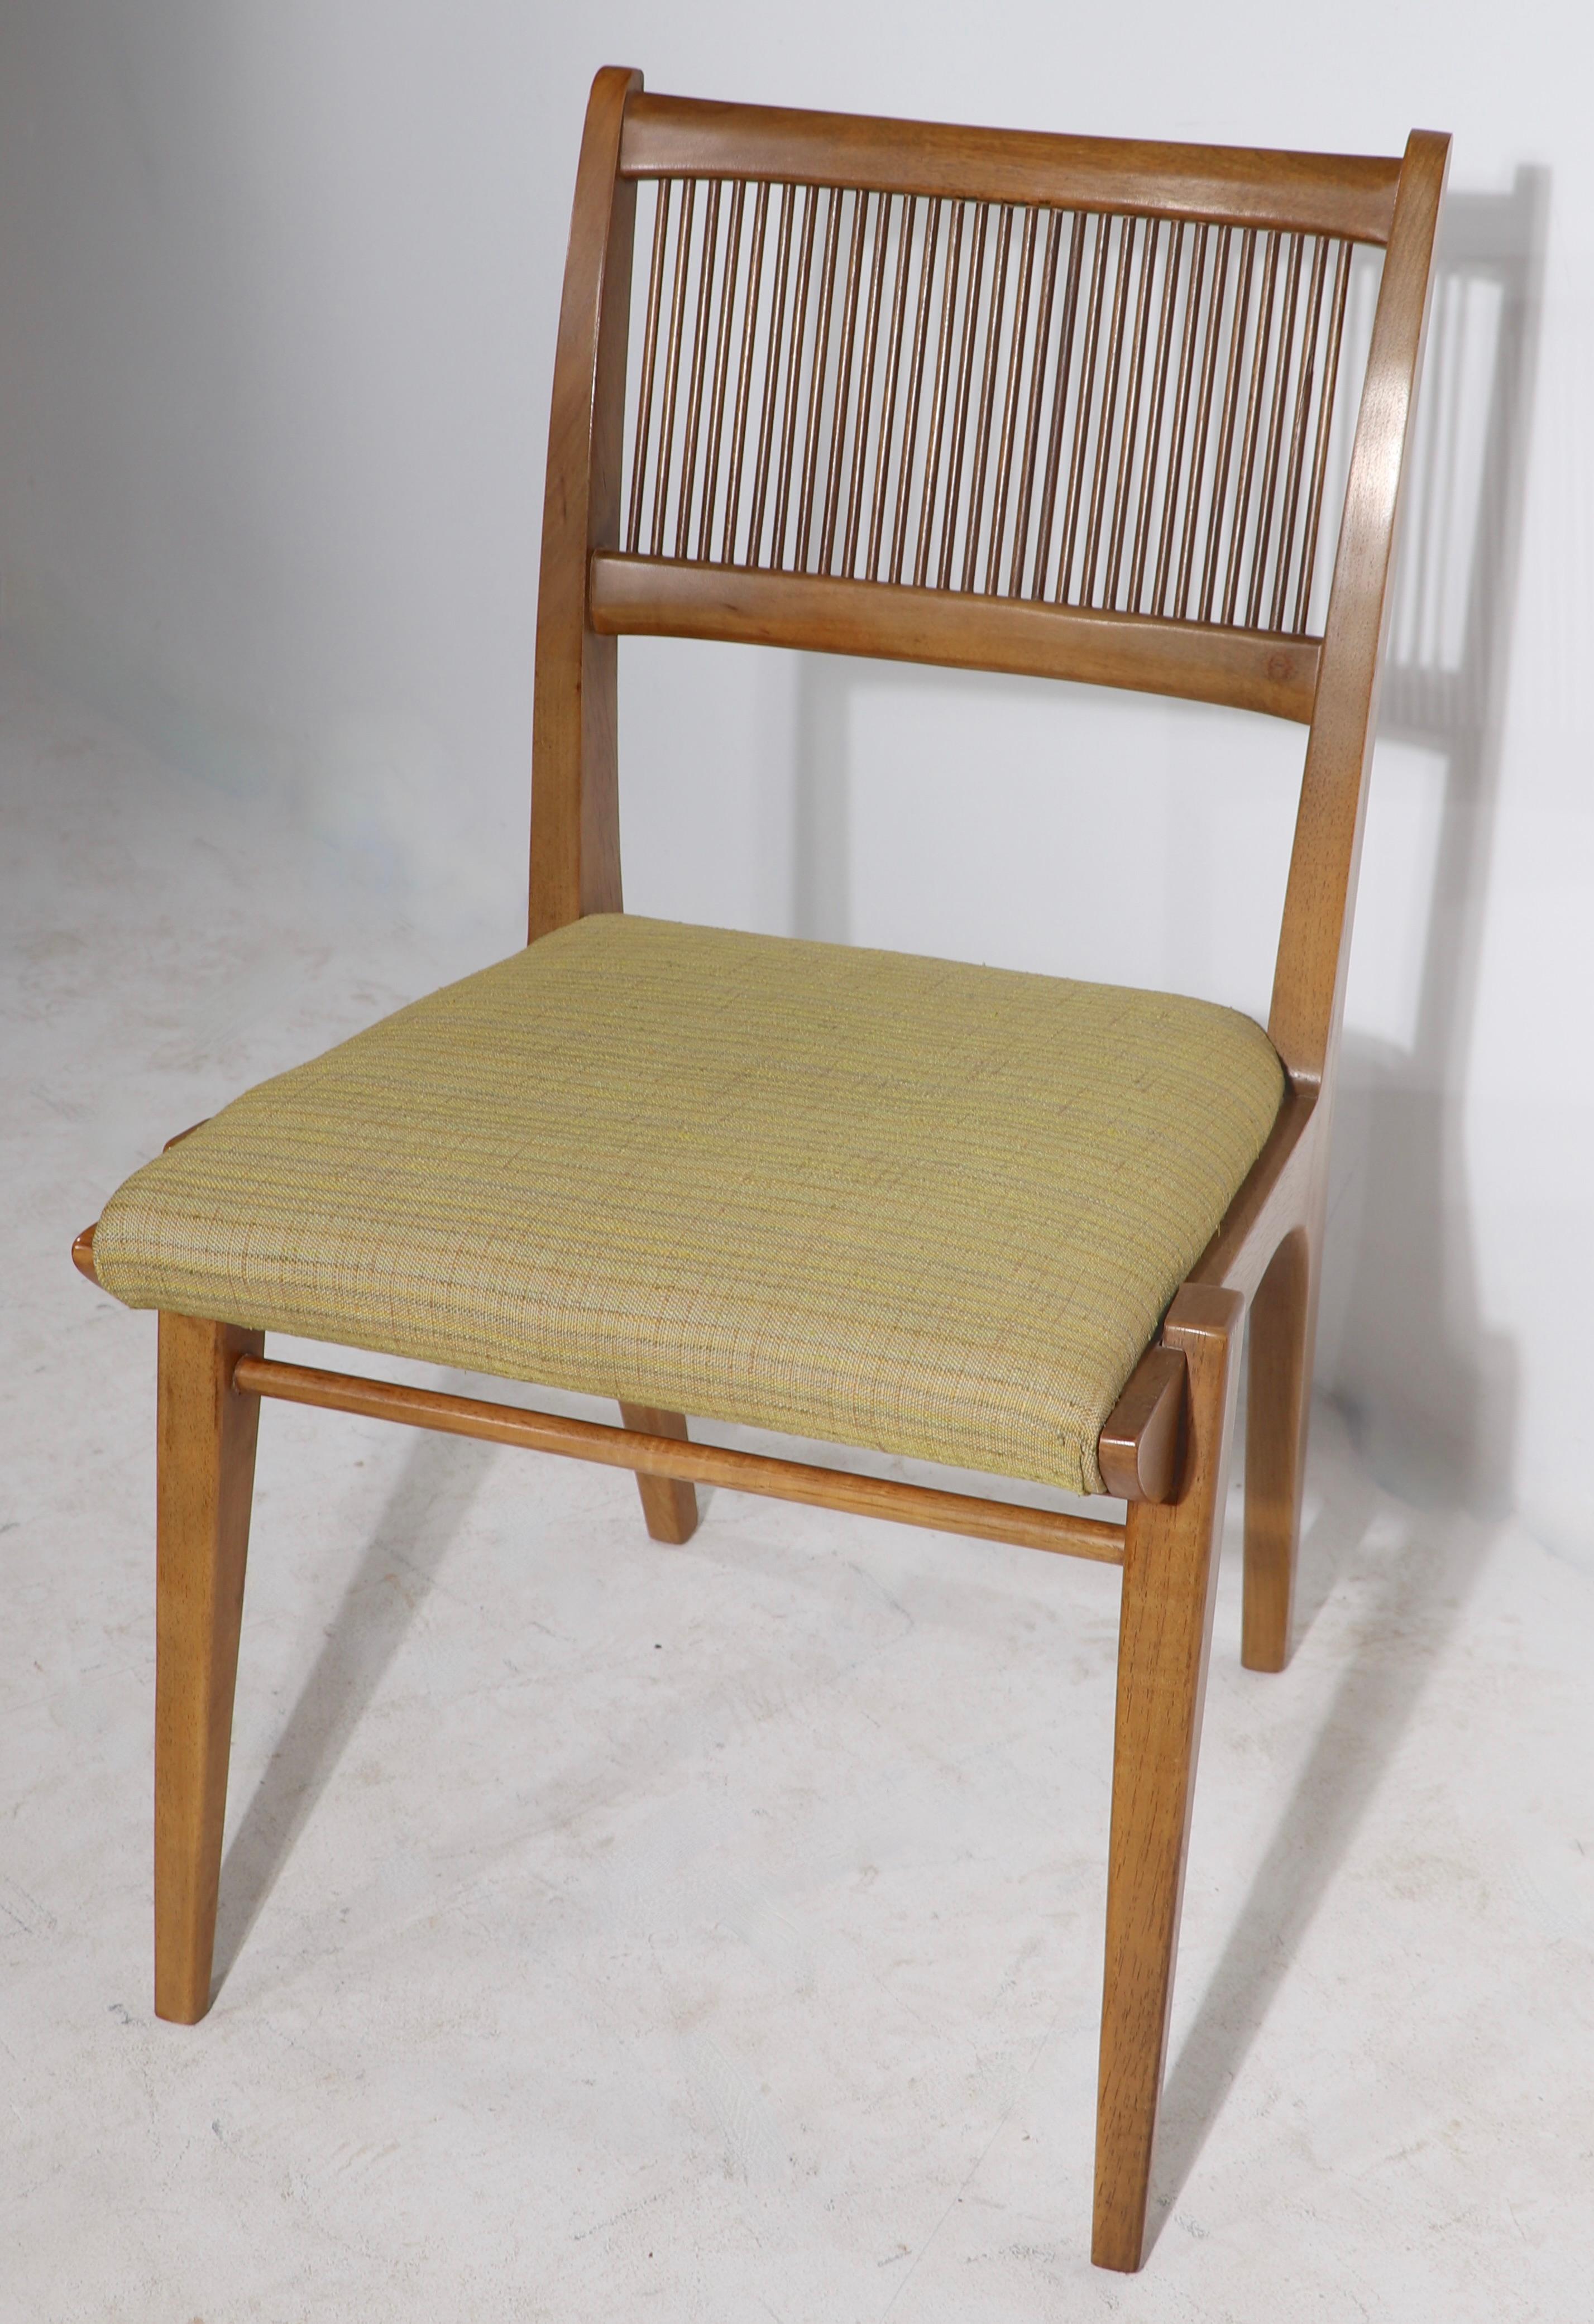 Exquise série de chaises de salle à manger du milieu du siècle, conçues par John Van Koert pour la série classique A.Profiles, fabriquée par Drexel. Circa 1950 ( 1957 ), les chaises présentent un cadre sculpté en noyer massif, avec des dossiers en